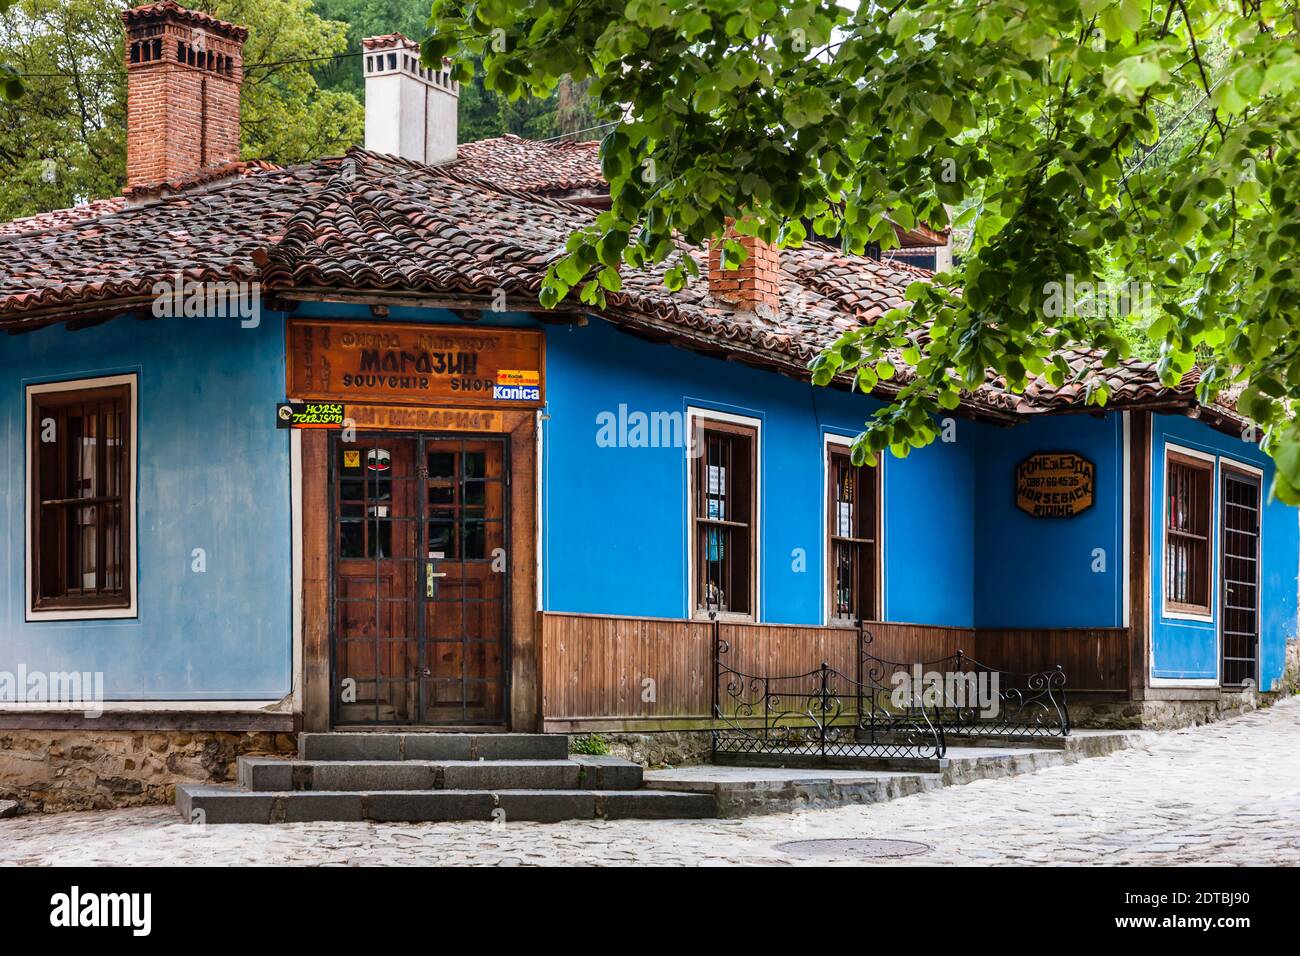 Maison bulgare traditionnelle et rue de Koprivshtitsa, province de Sofia, Bulgarie, Europe du Sud-est, Europe Banque D'Images